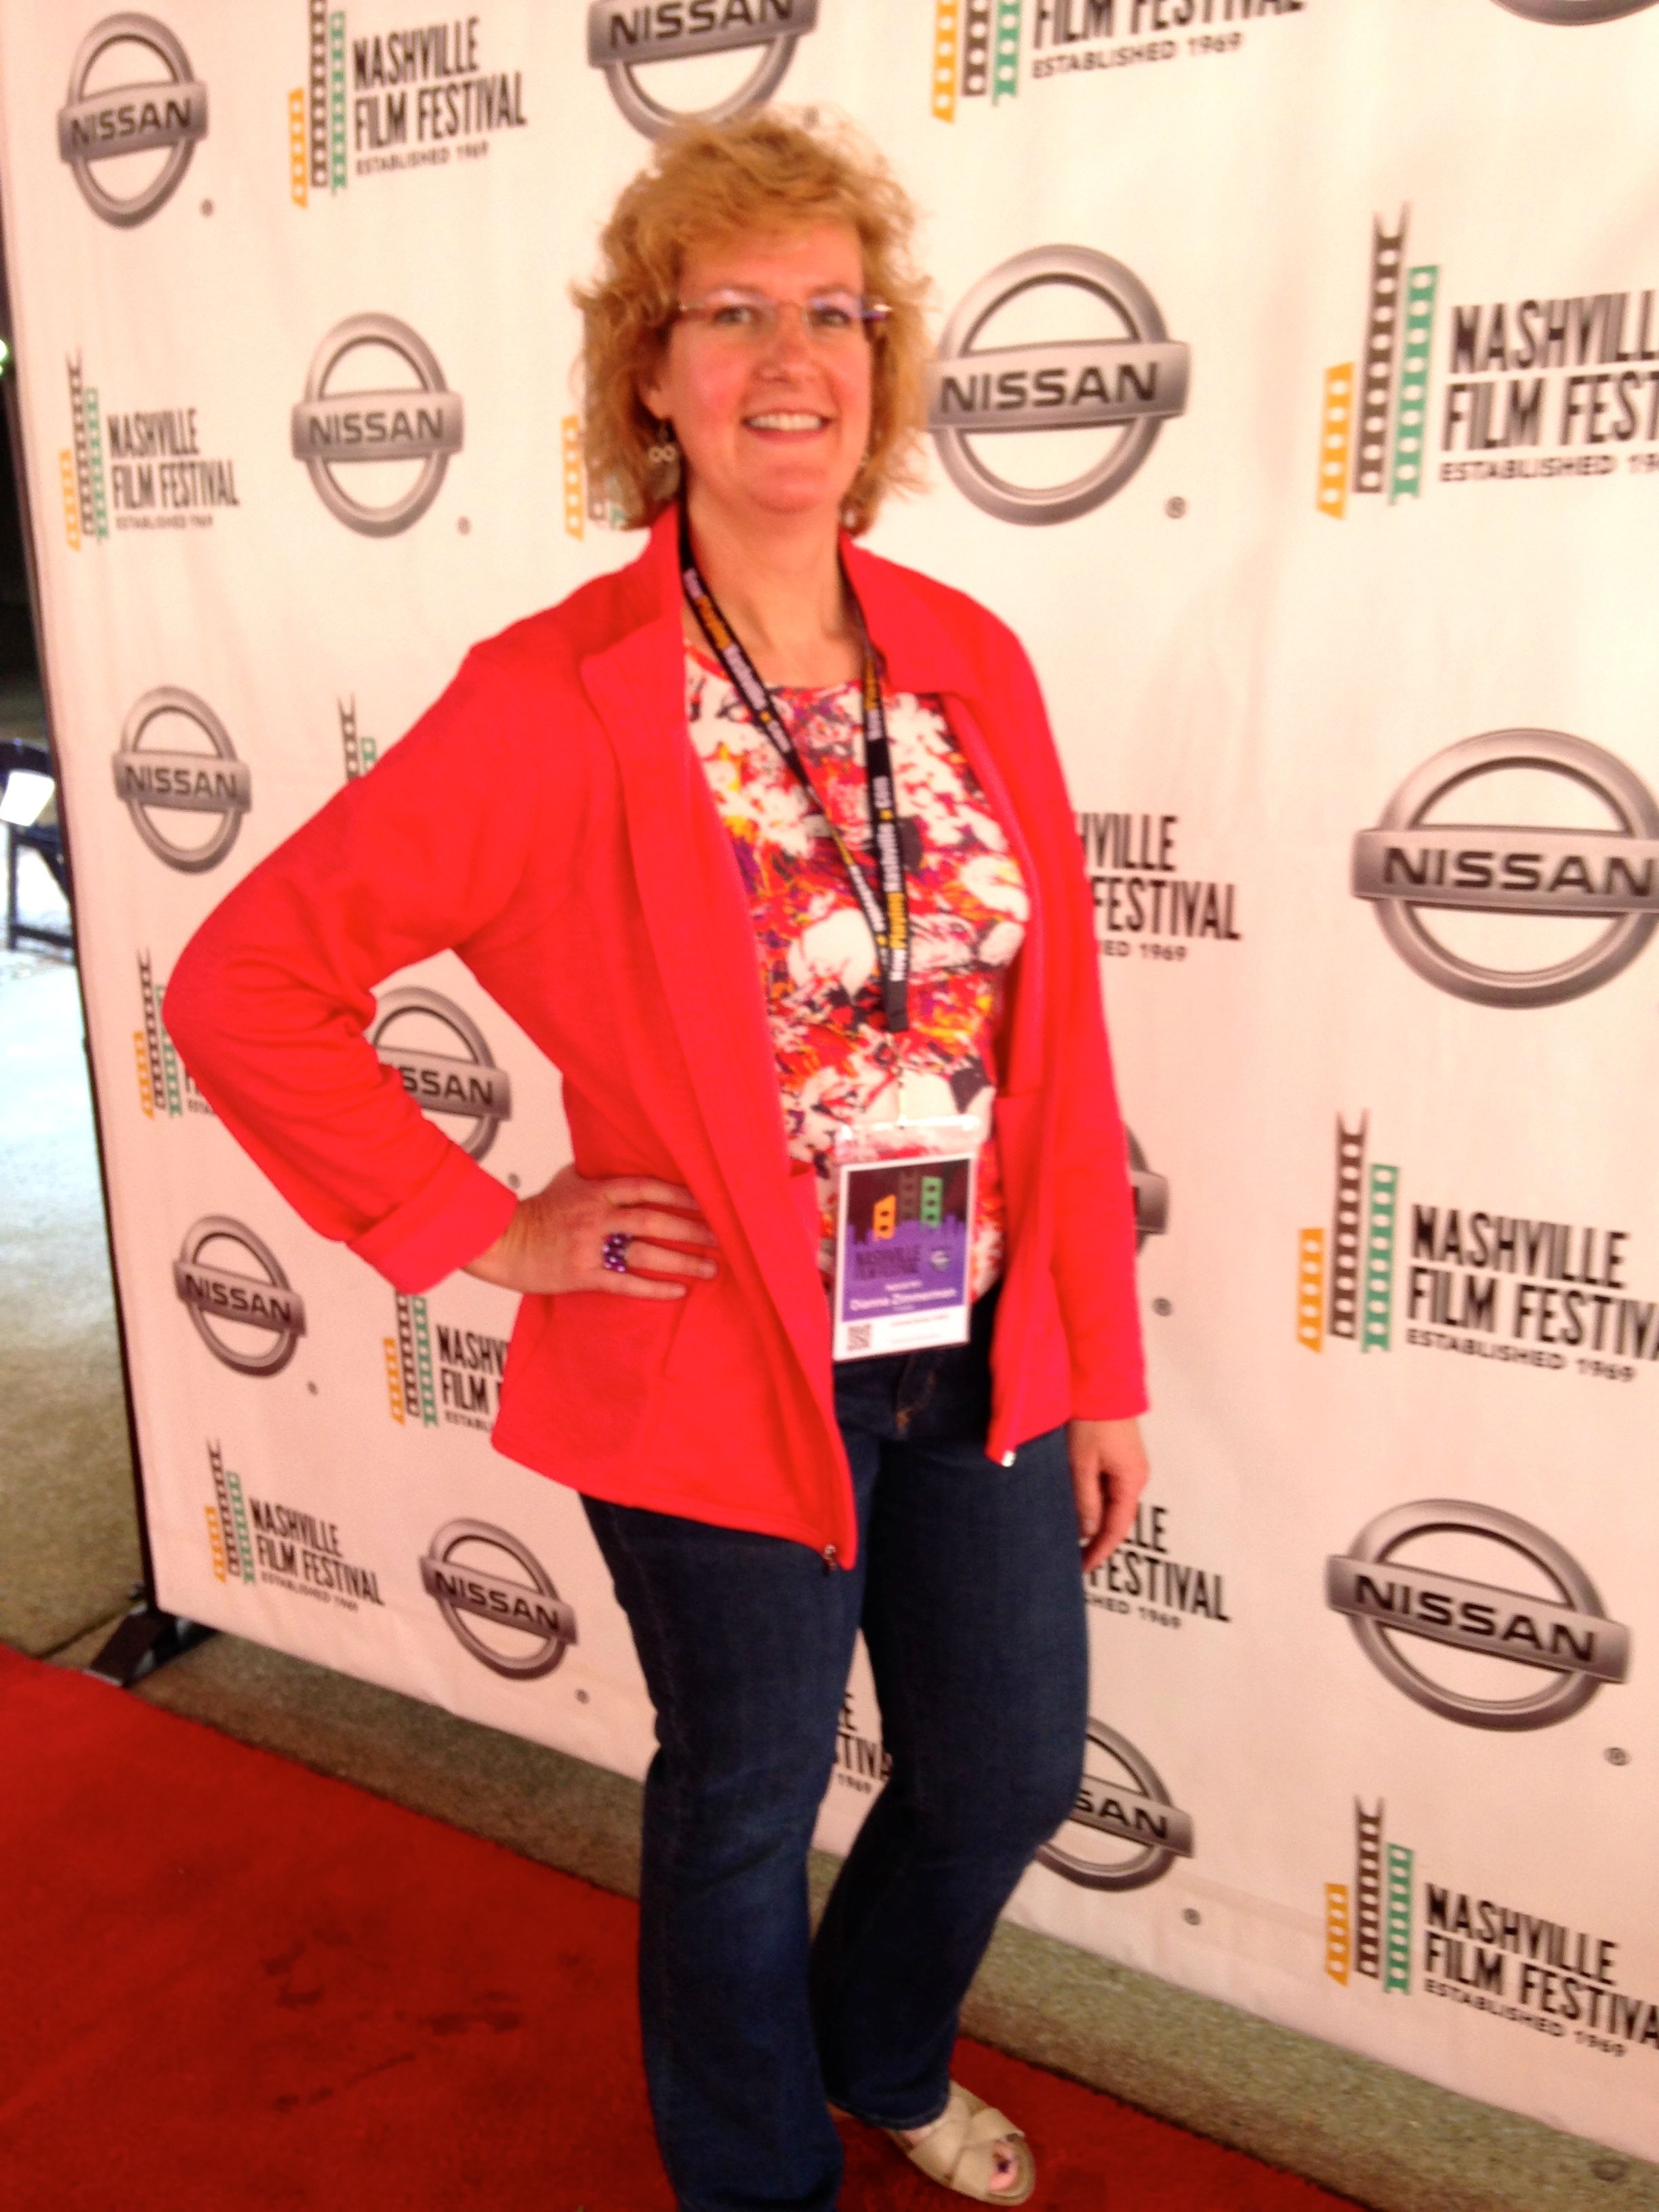 Nashville Film Festival, 2014